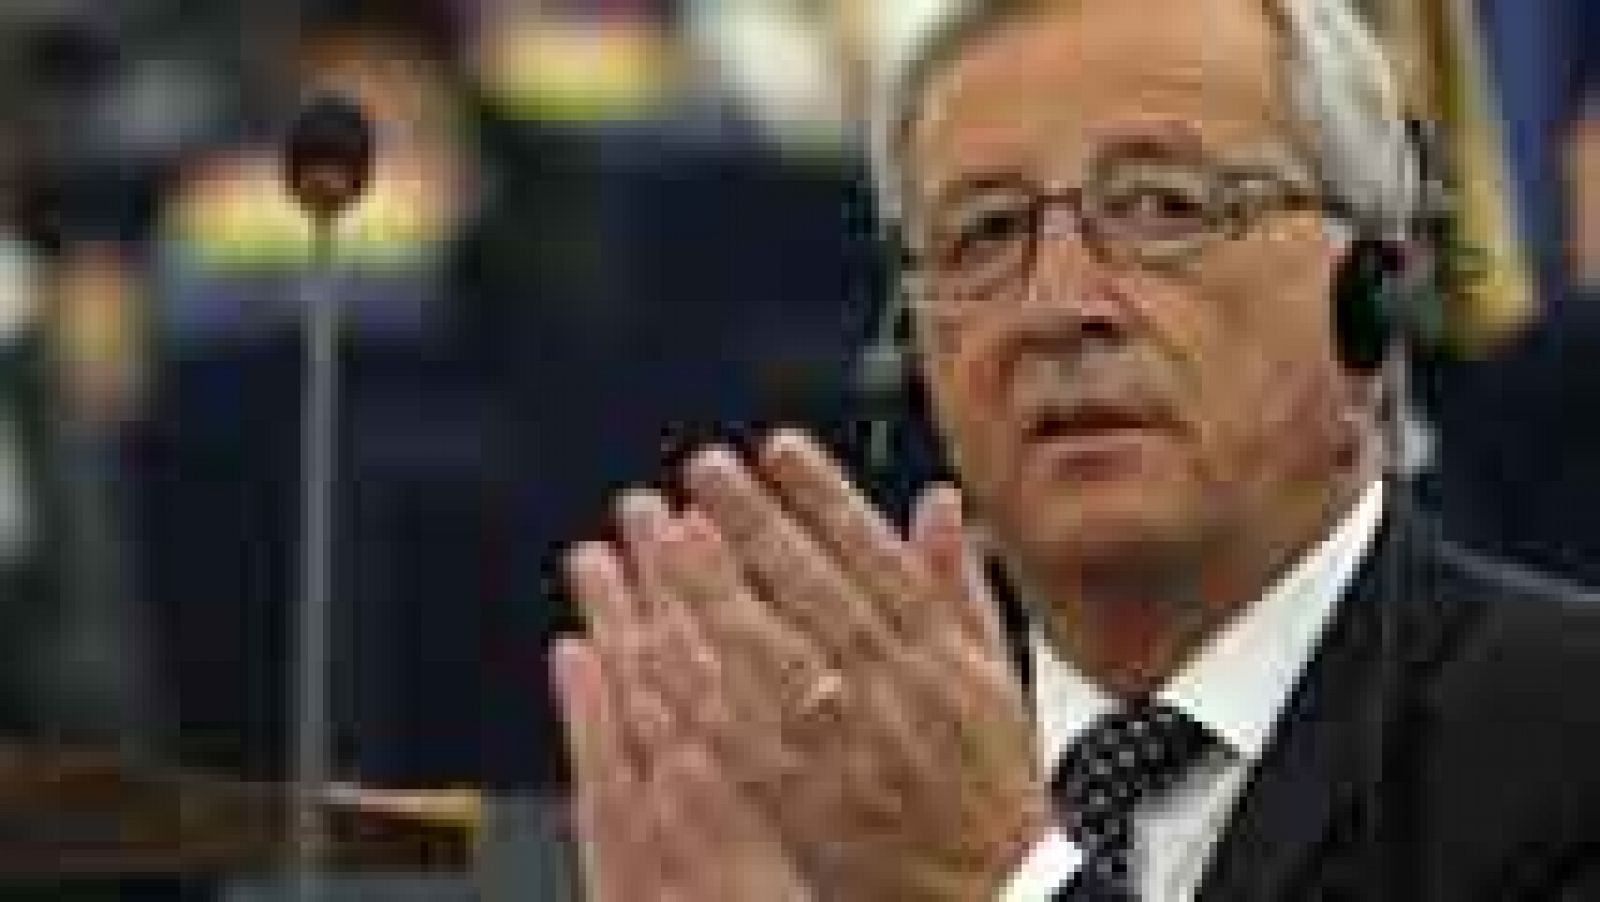 Jean Claude Juncker obtiene el apoyo de la mayoría absoluta del Parlamento Europeo para convertirse en el próximo presidente de la Comisión